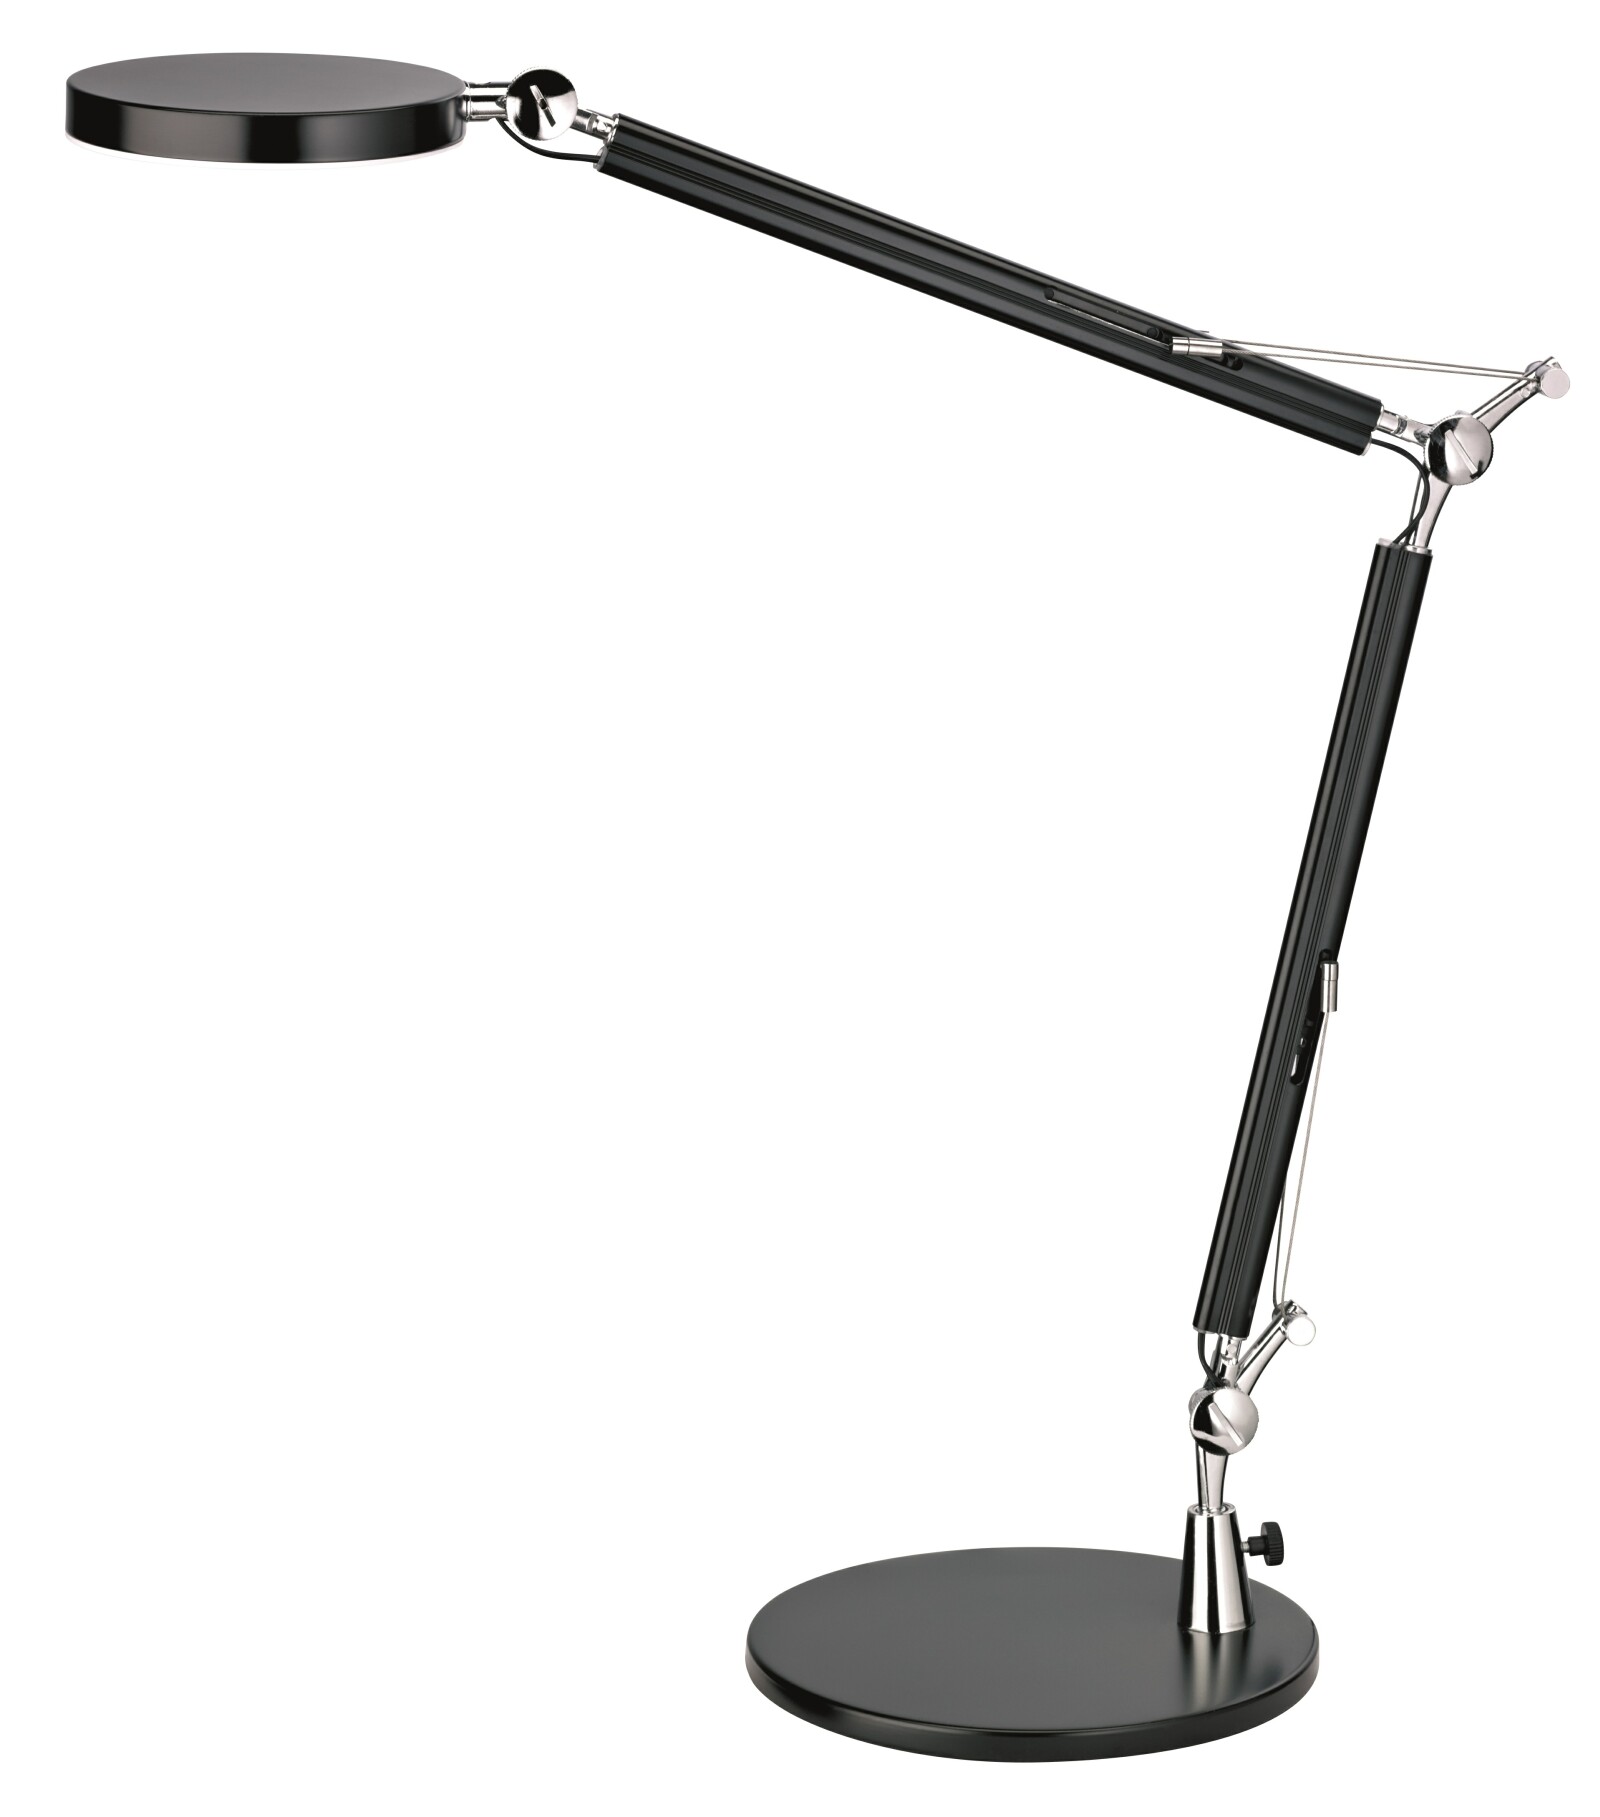 Lampa de birou cu led,  4.8W, 2000 lux - 35cm, ajustabila, cu brat articulat, ALCO - neagra